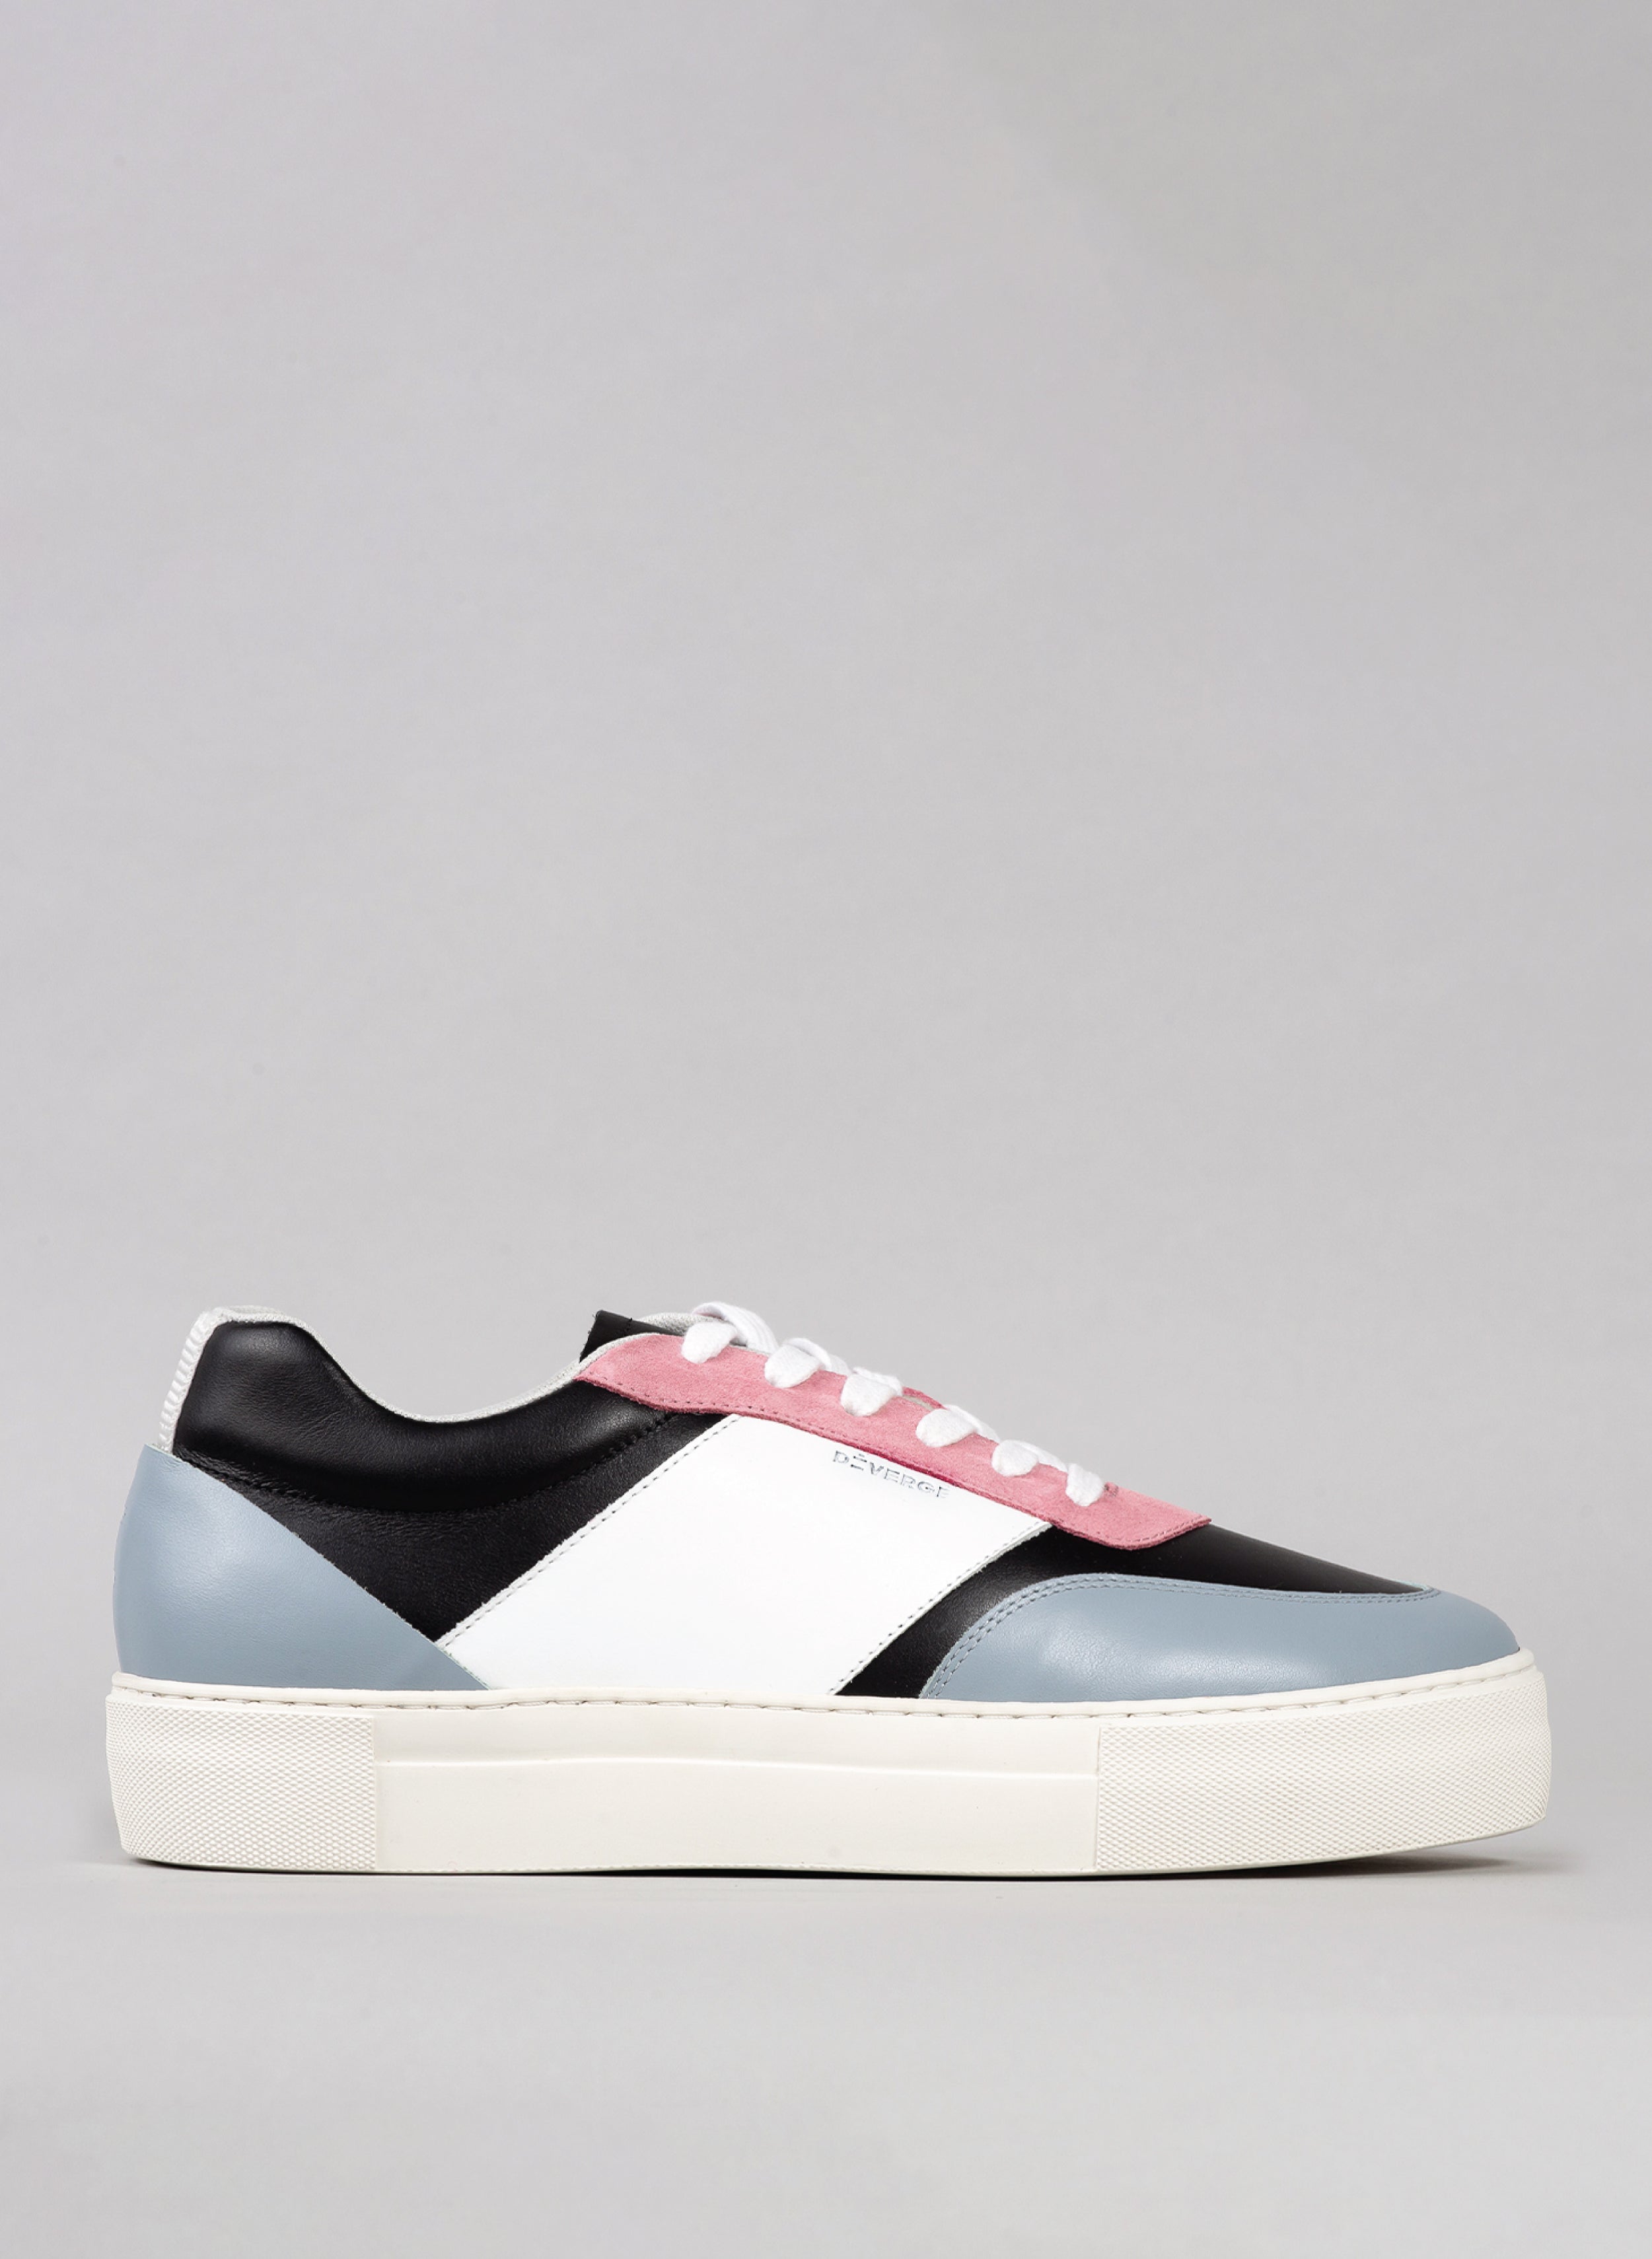 artic, cuero premium negro y rosa sneakers en diseño contemporáneo sideview